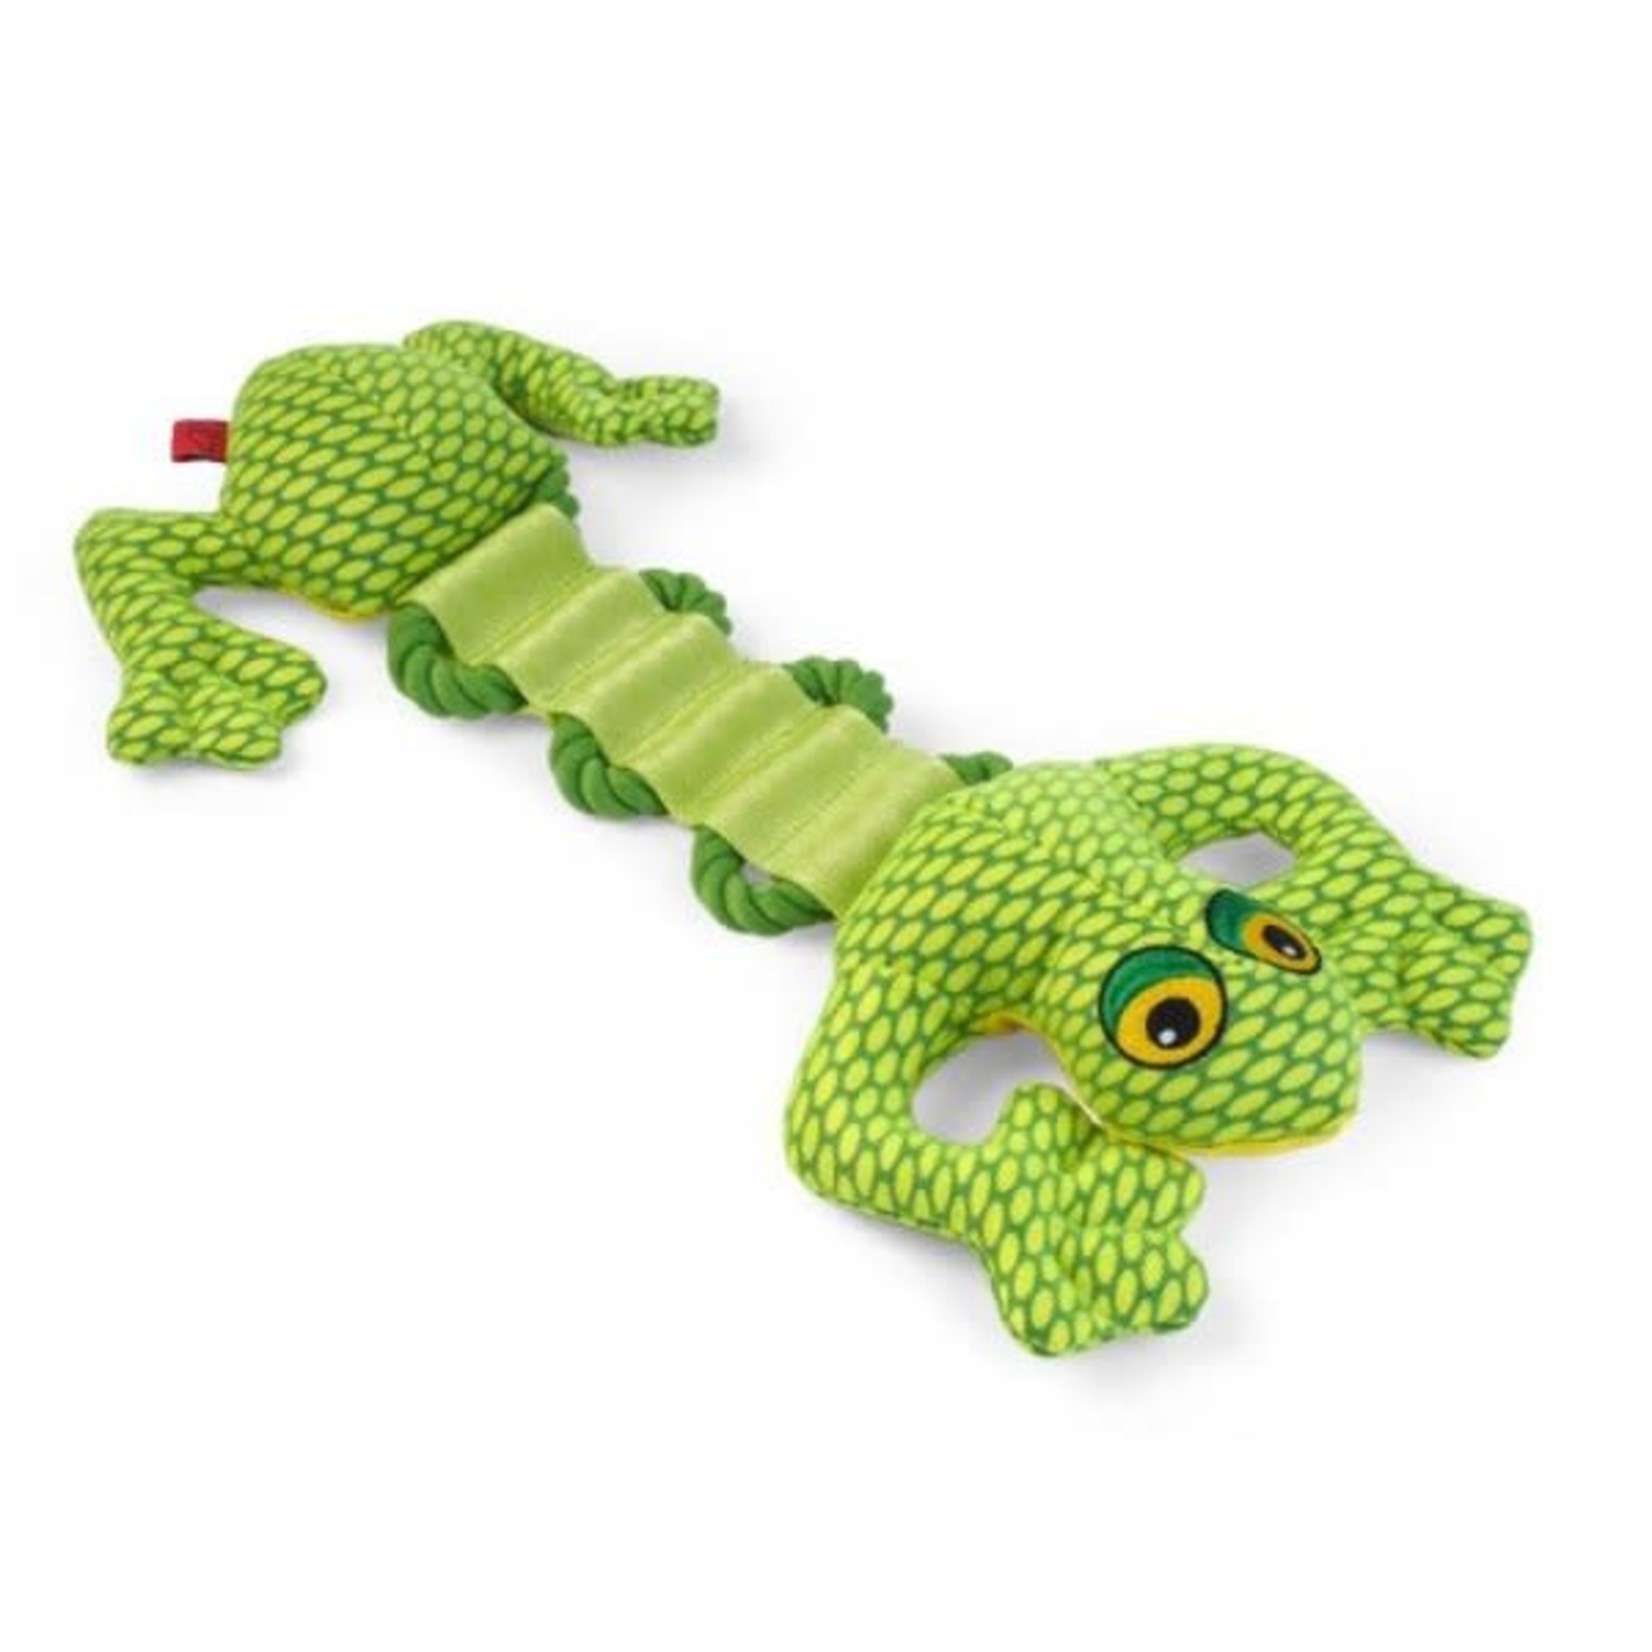 Zöon Dura Gecko Tough Seams Dog Toy, 41cm